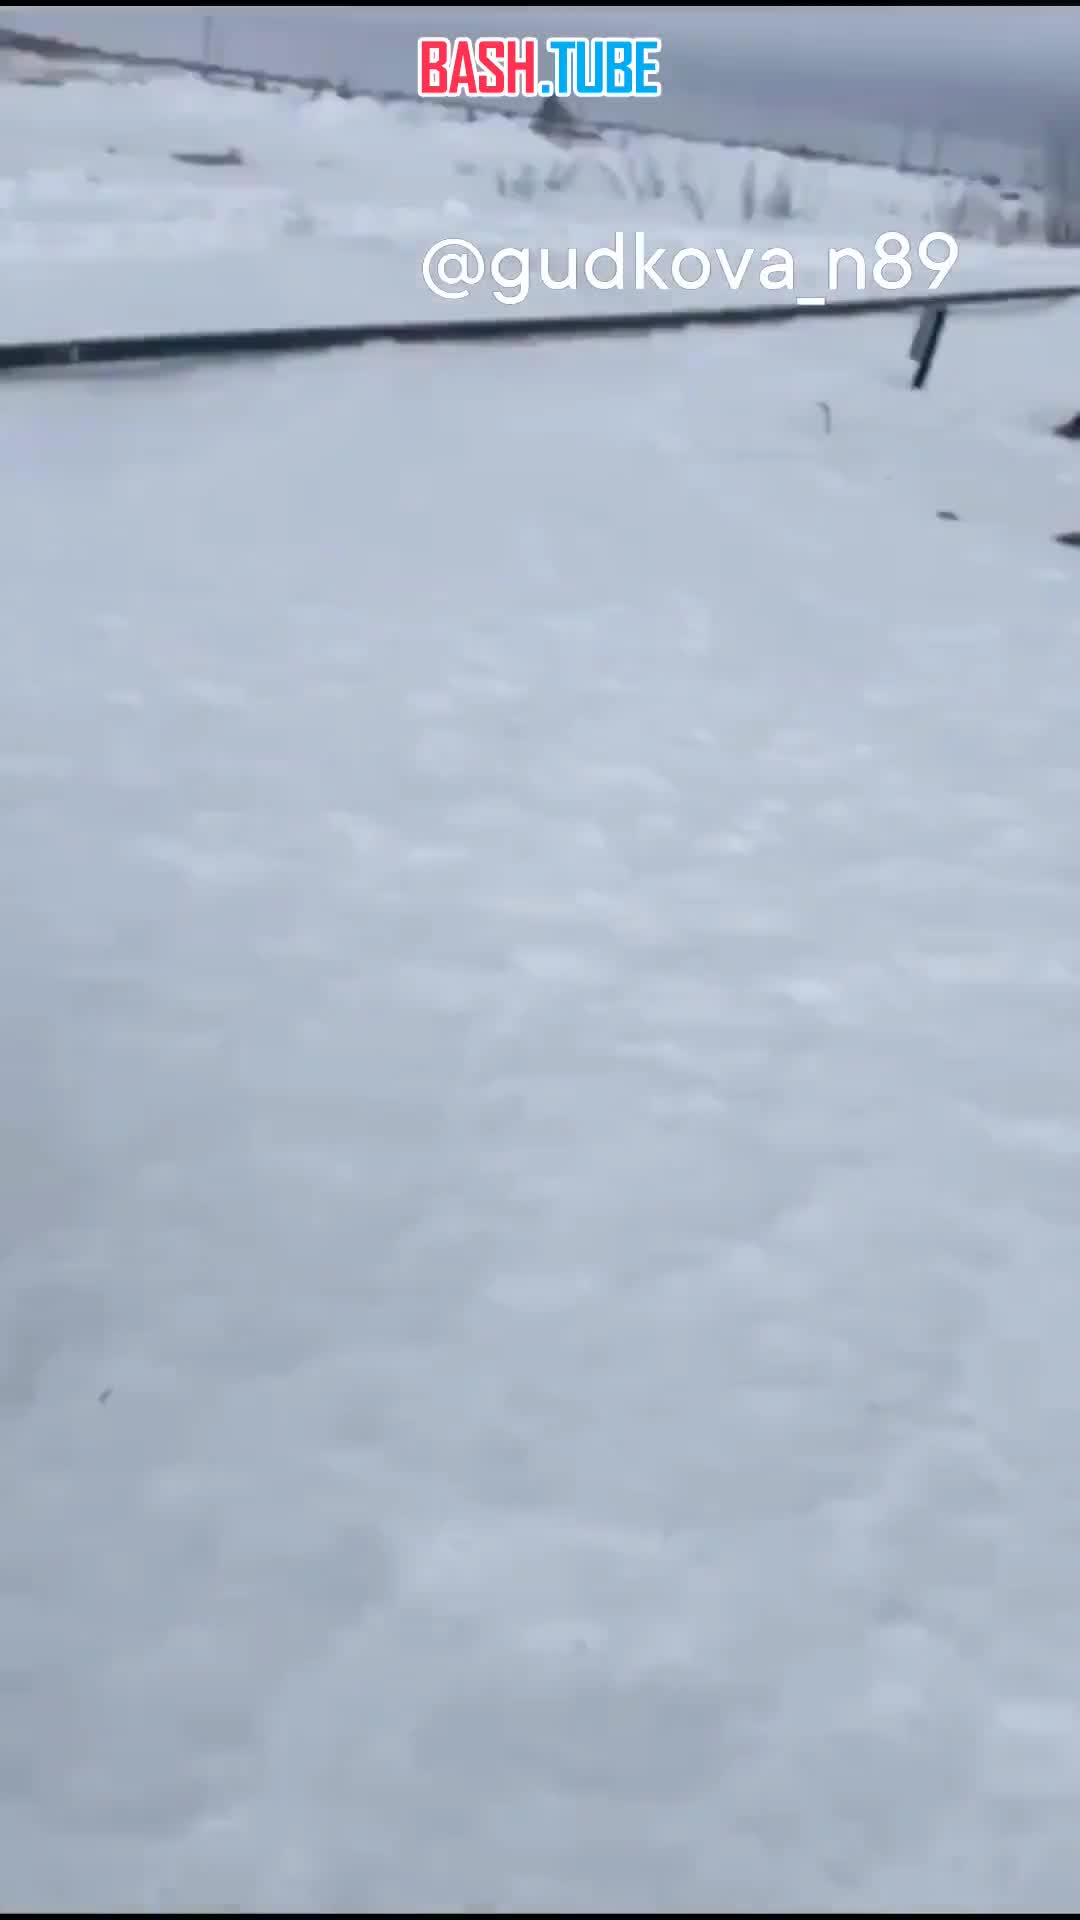  На Ямале спасли оленя, который угодил в яму с водой и не мог выбраться самостоятельно